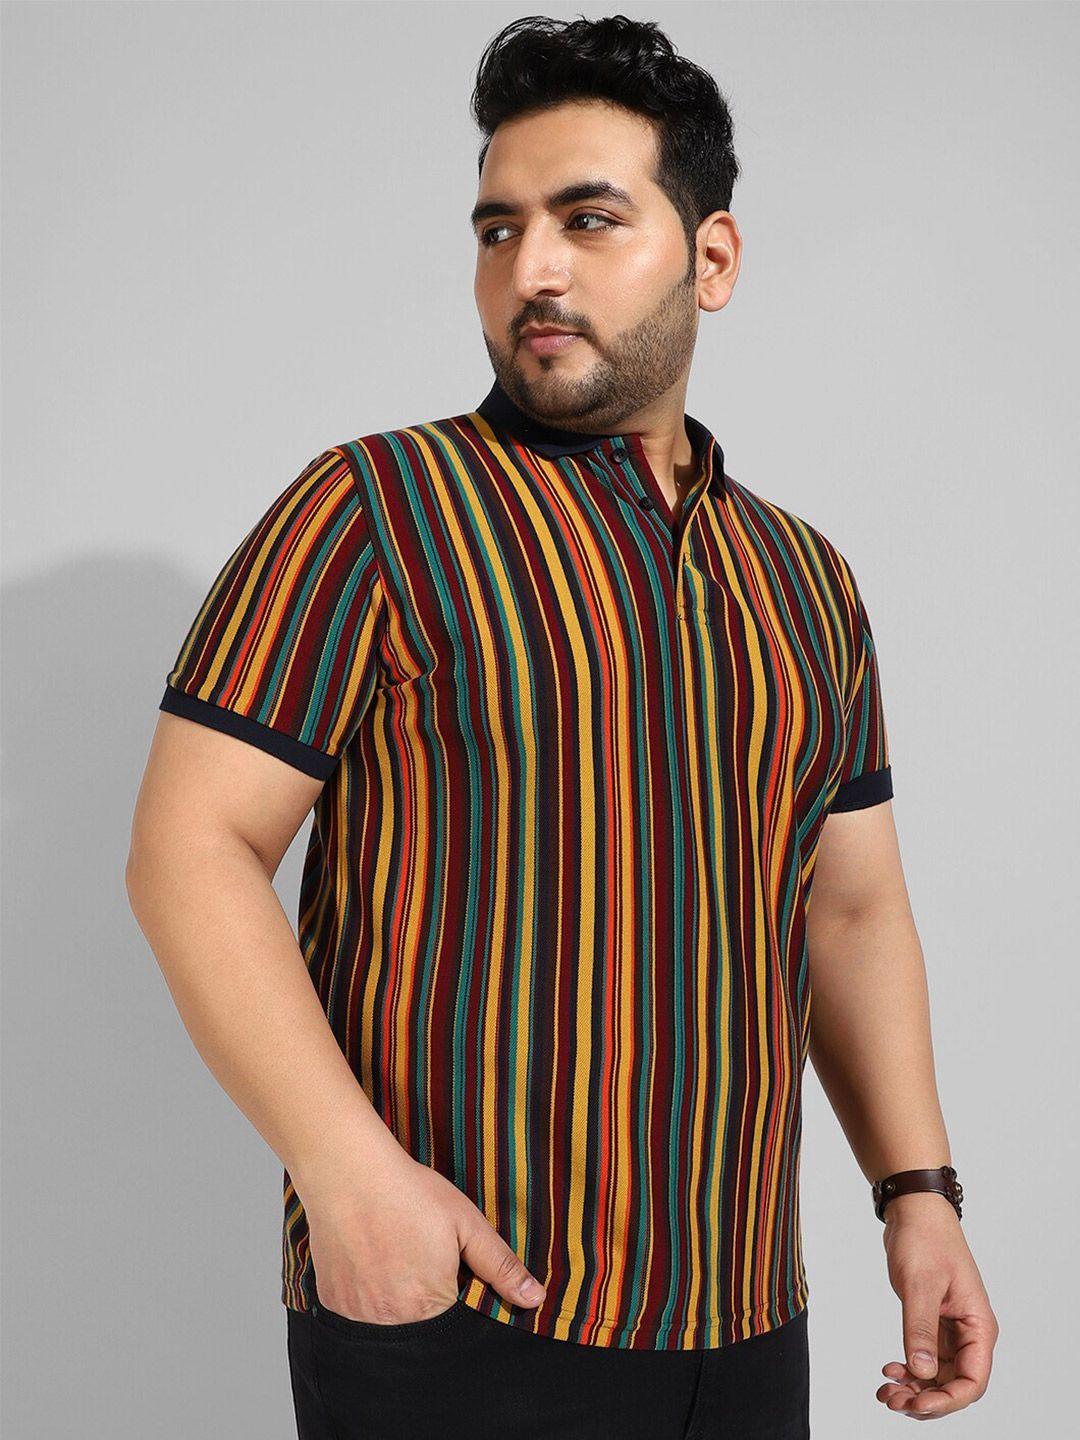 instafab plus men plus size striped cotton flex t-shirt